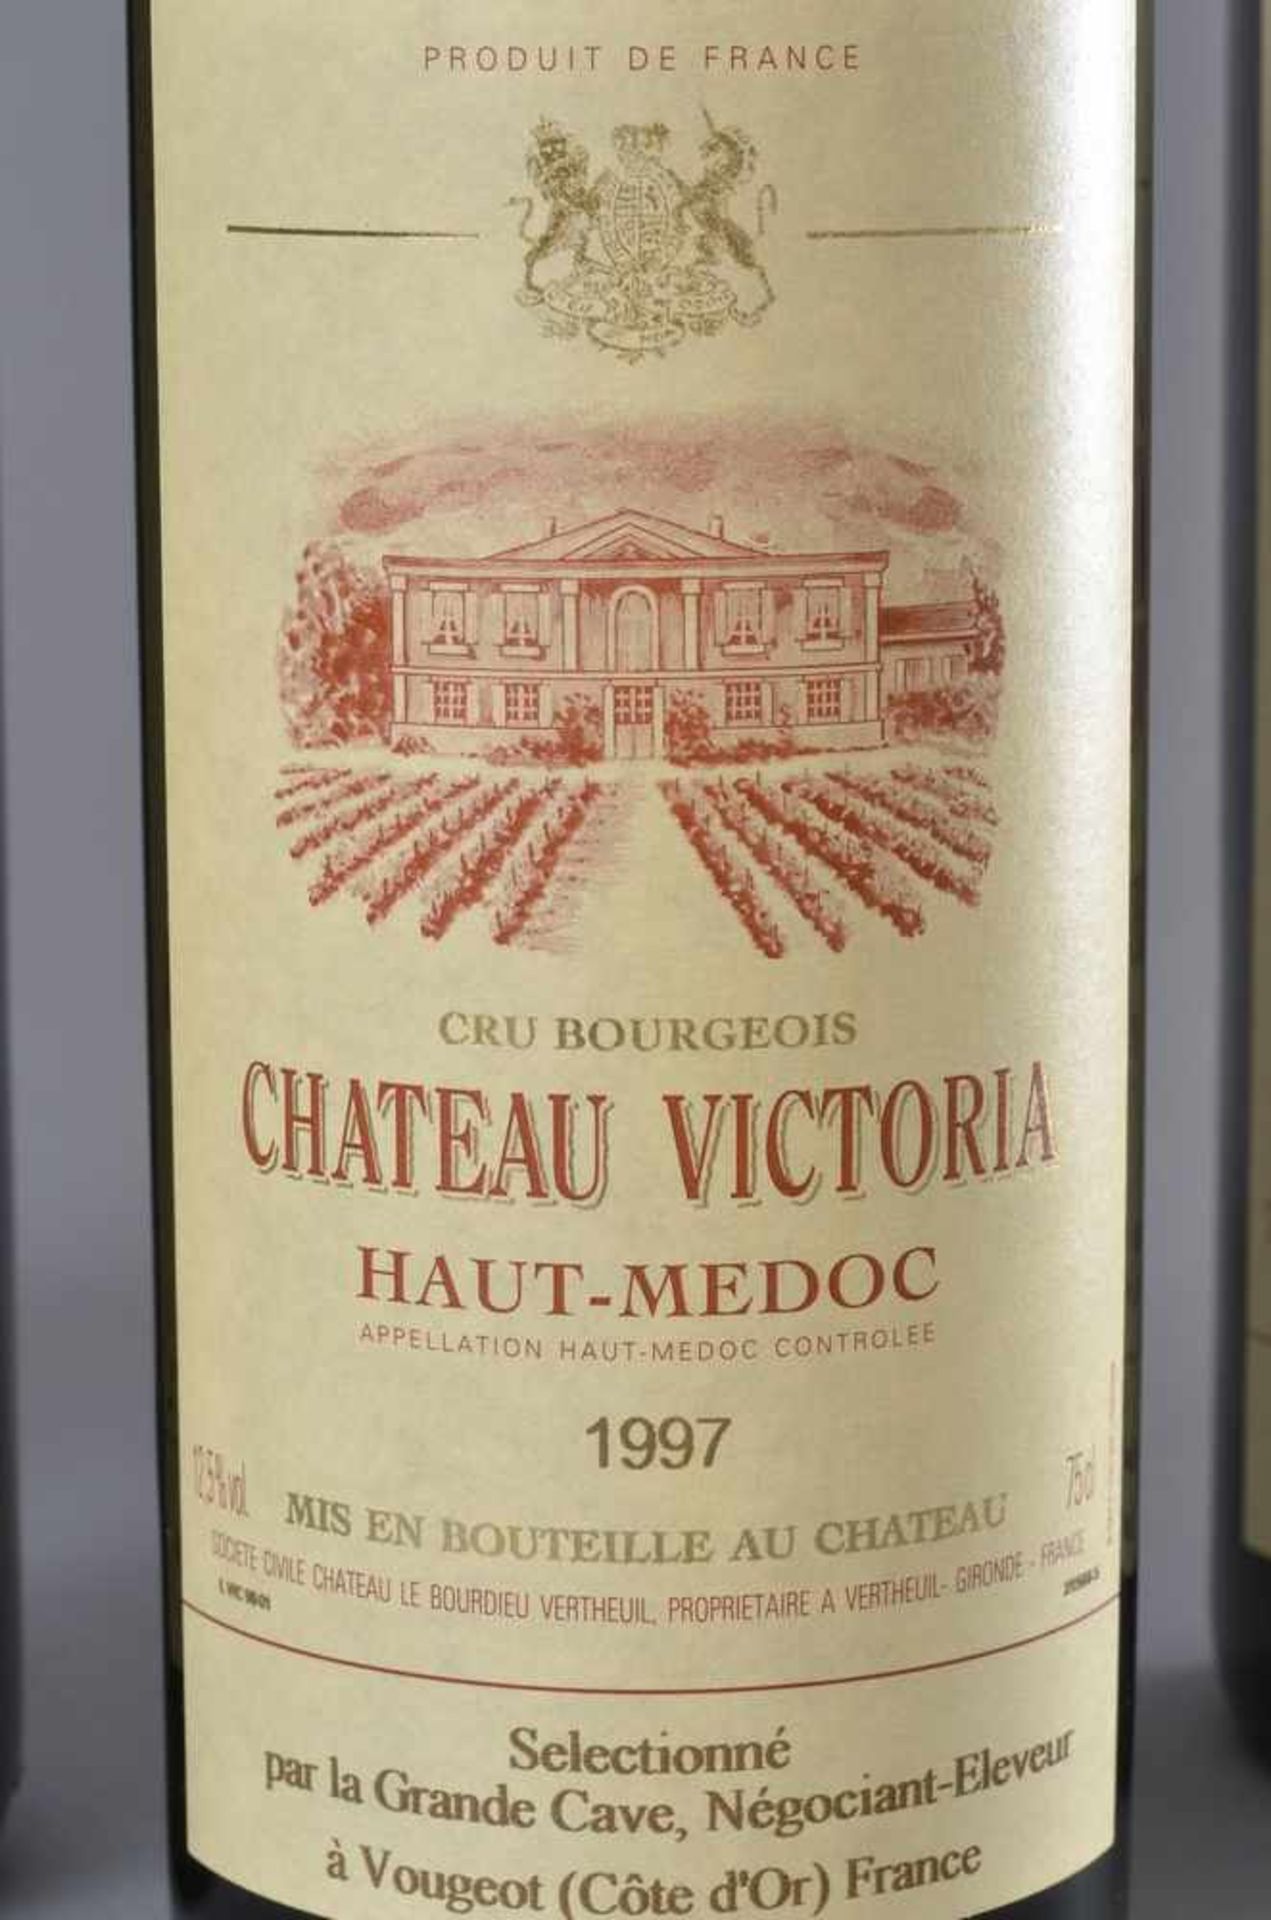 4 Flaschen 1997 Chateau Victoria, Haut-Medoc, Cru Bourgeois, Bordeaux Rotwein, Schlossabzug, 750ml - Bild 2 aus 4